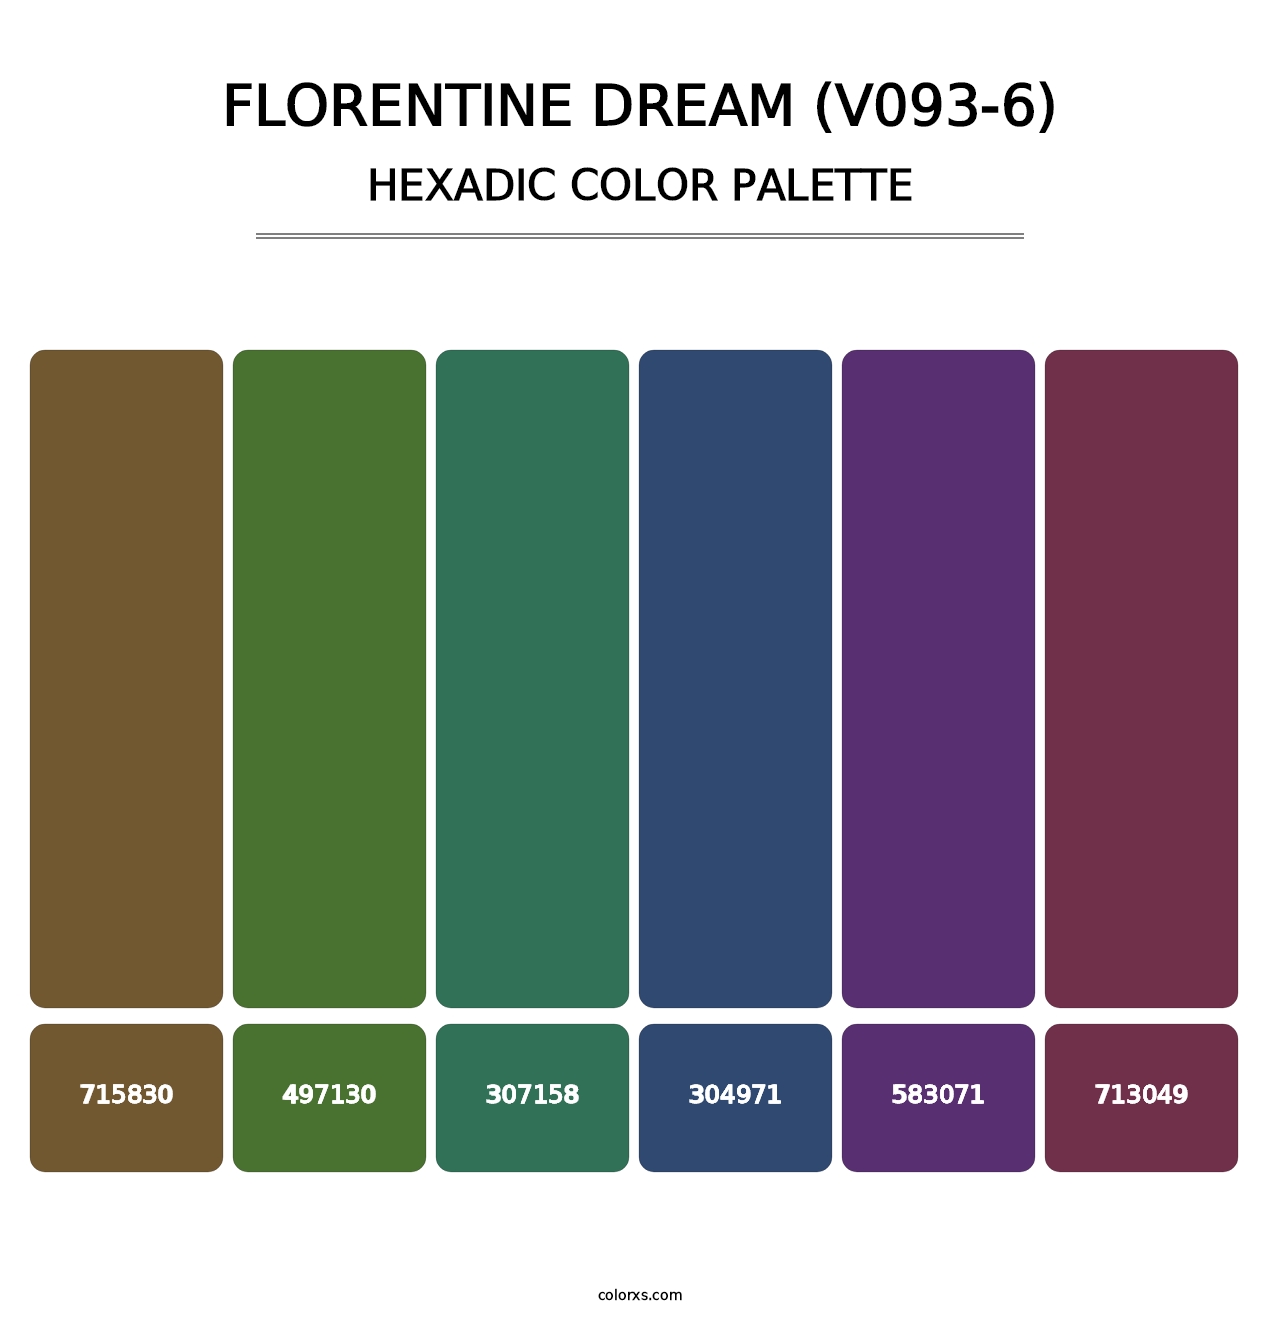 Florentine Dream (V093-6) - Hexadic Color Palette